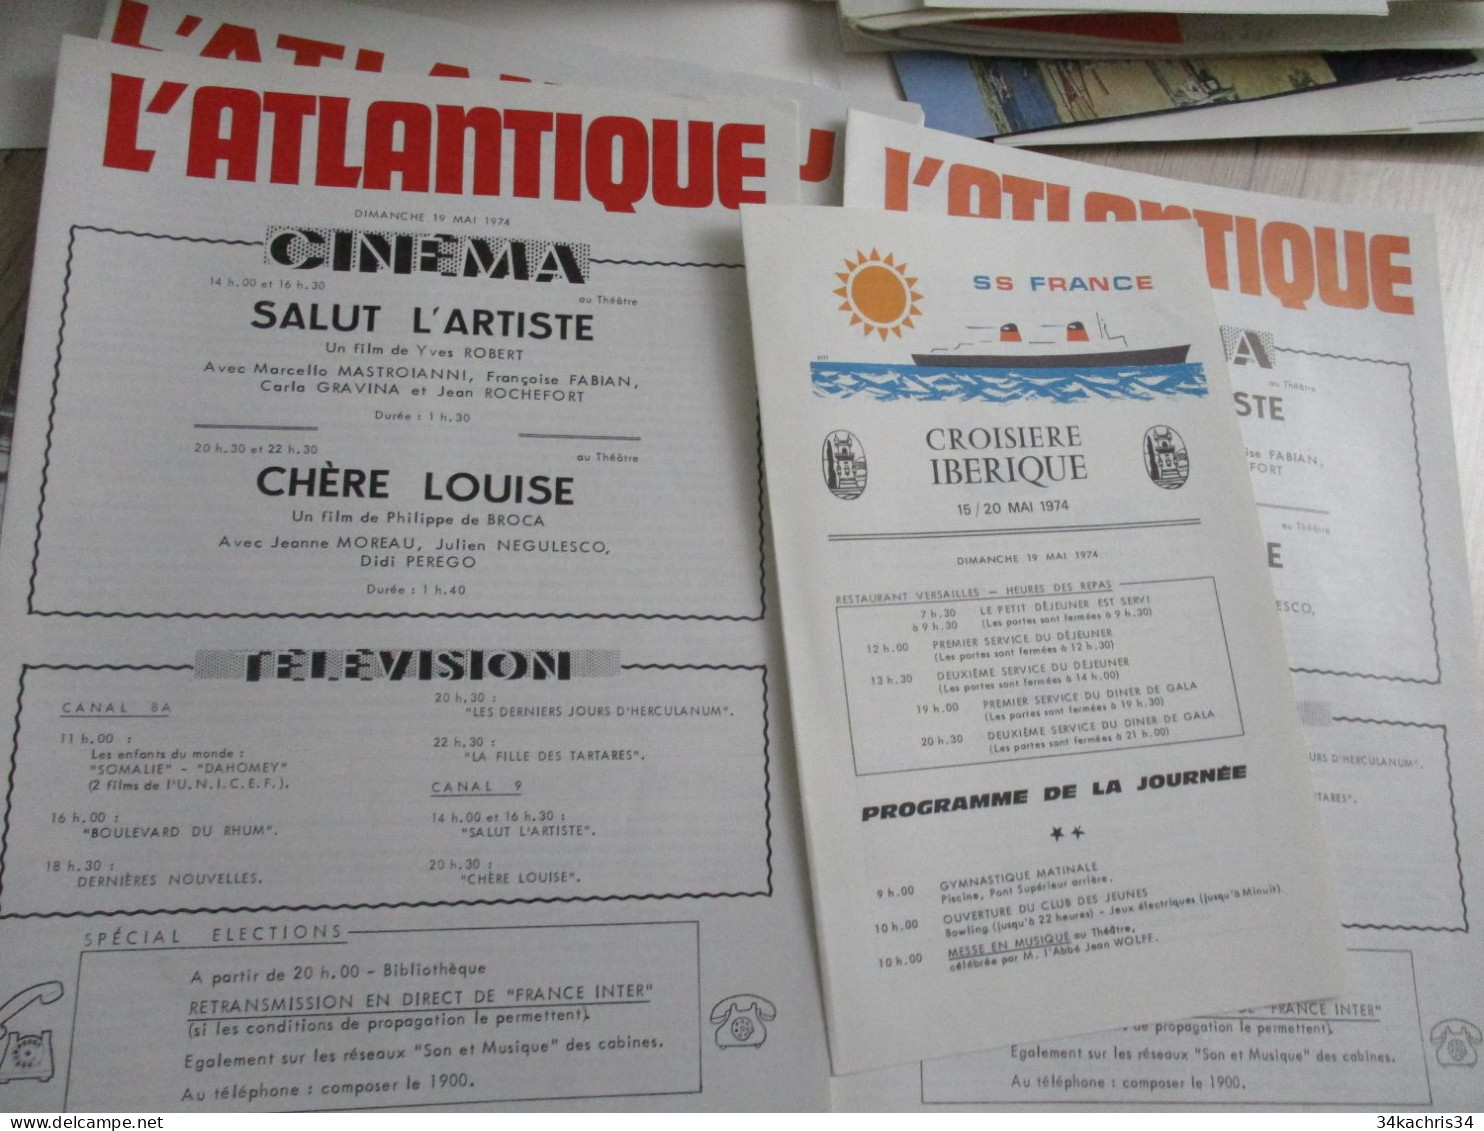 Paquebot France archive documents commerciaux pub publicité menus programme cinéma..... envoi colissimo voir photos